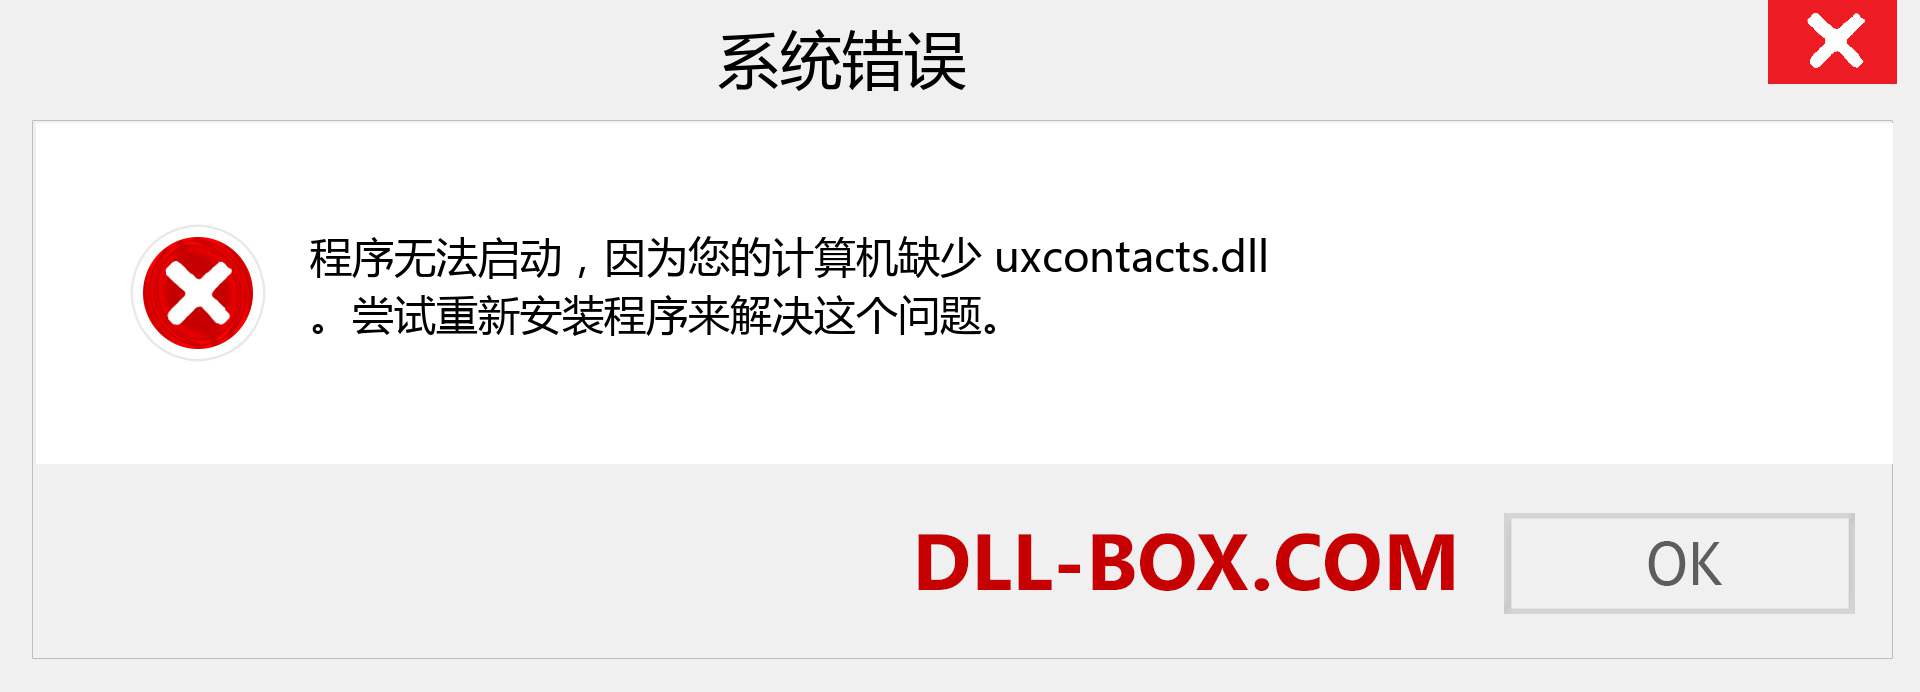 uxcontacts.dll 文件丢失？。 适用于 Windows 7、8、10 的下载 - 修复 Windows、照片、图像上的 uxcontacts dll 丢失错误